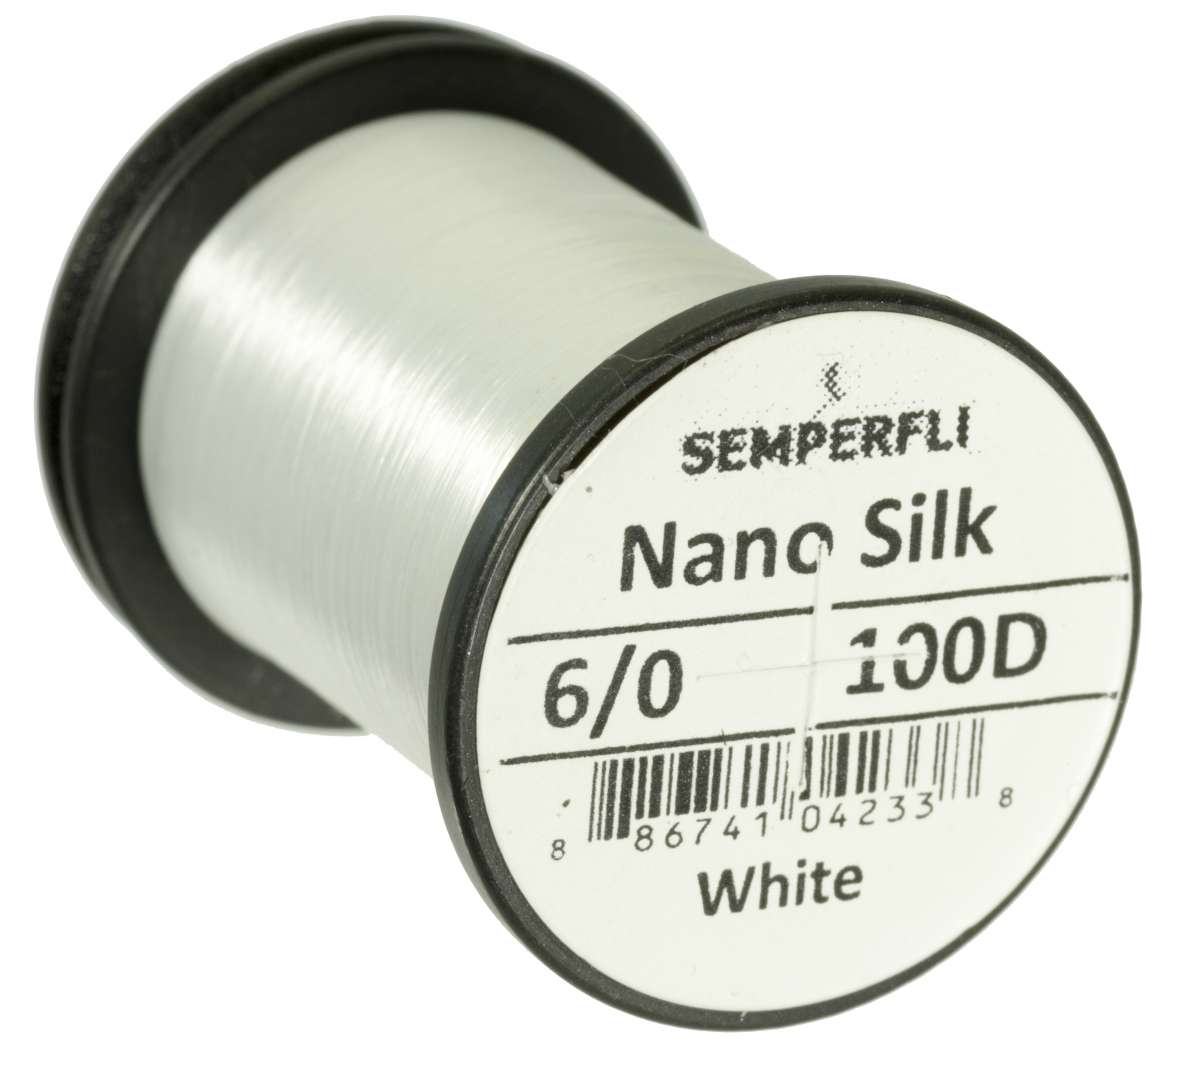 Nano Silk 100D - 6/0 White